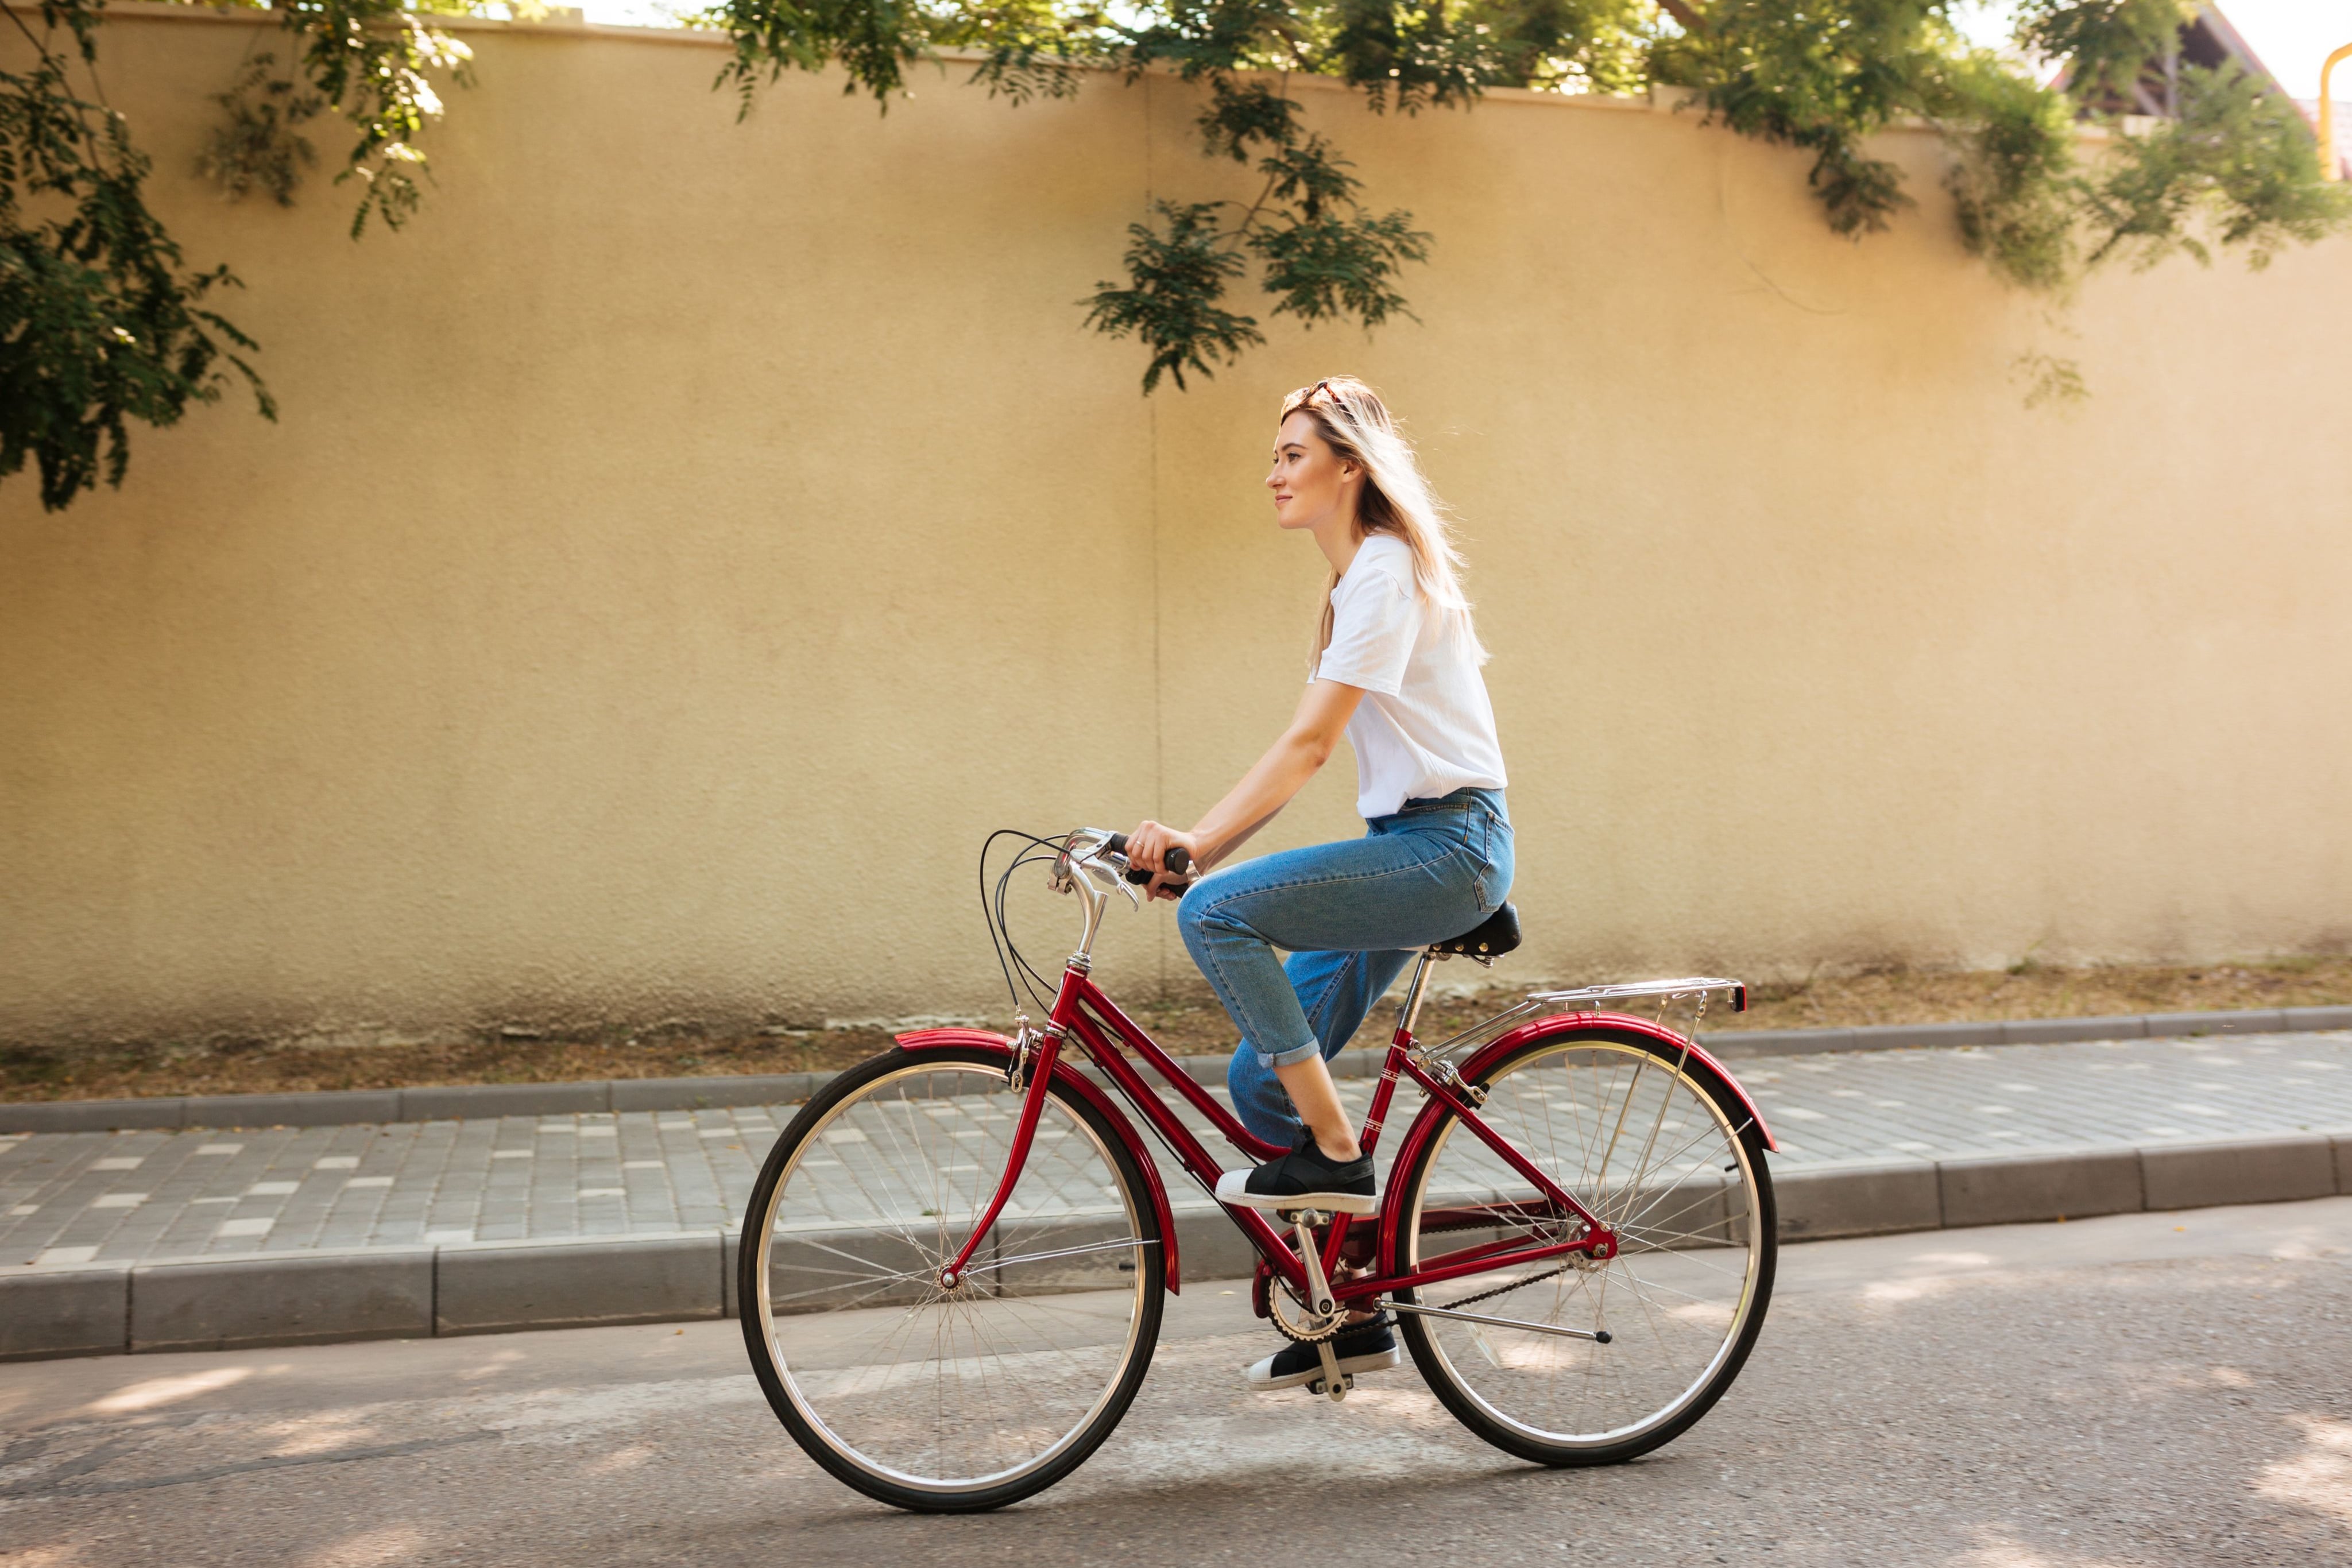 женщина едет на велосипеде городского типа